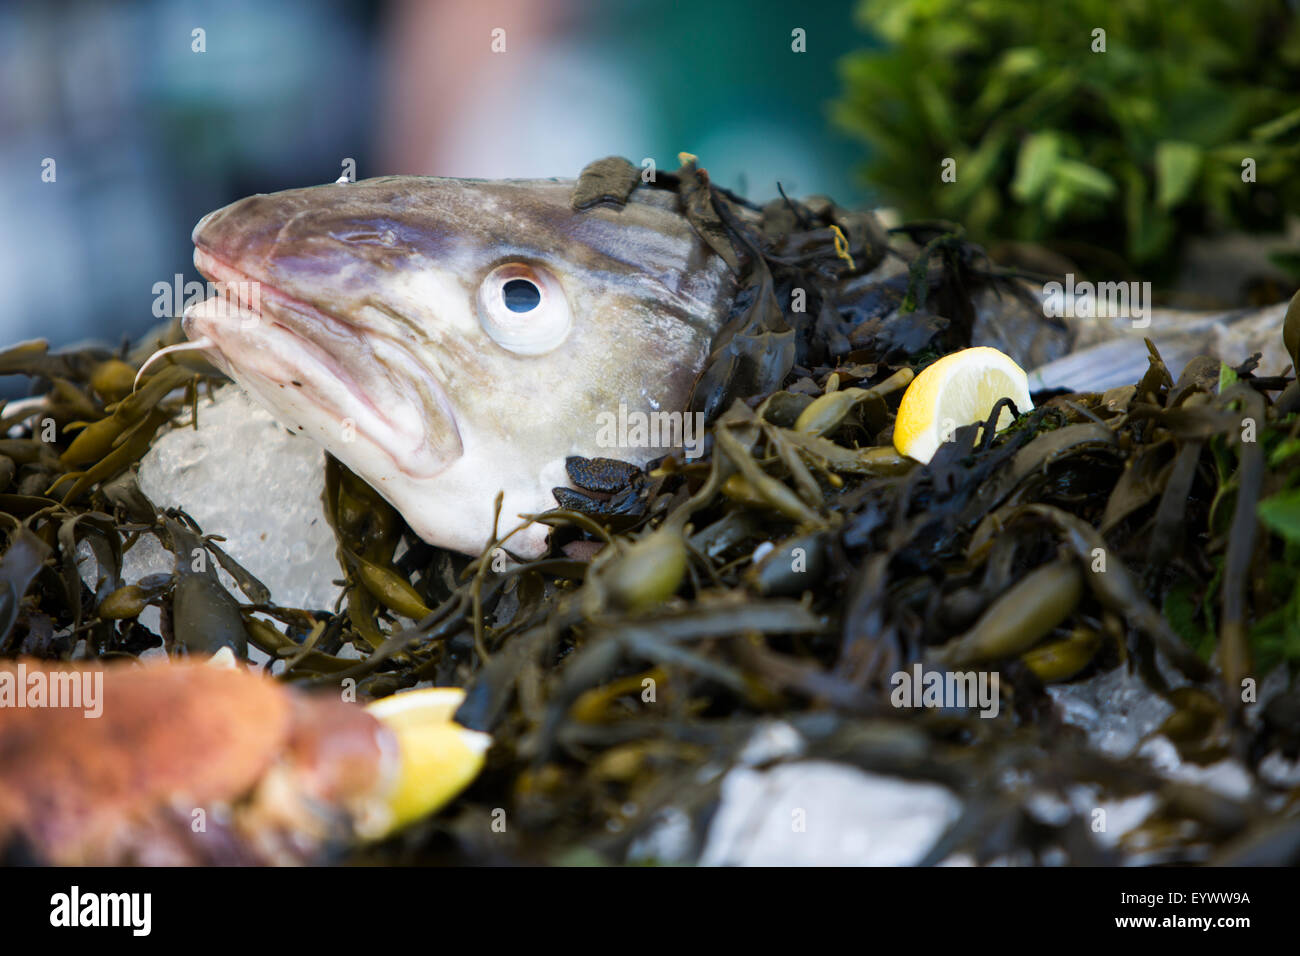 Detail von der Platte mit Meeresfrüchten.  Kabeljau in Algen. Stockfoto